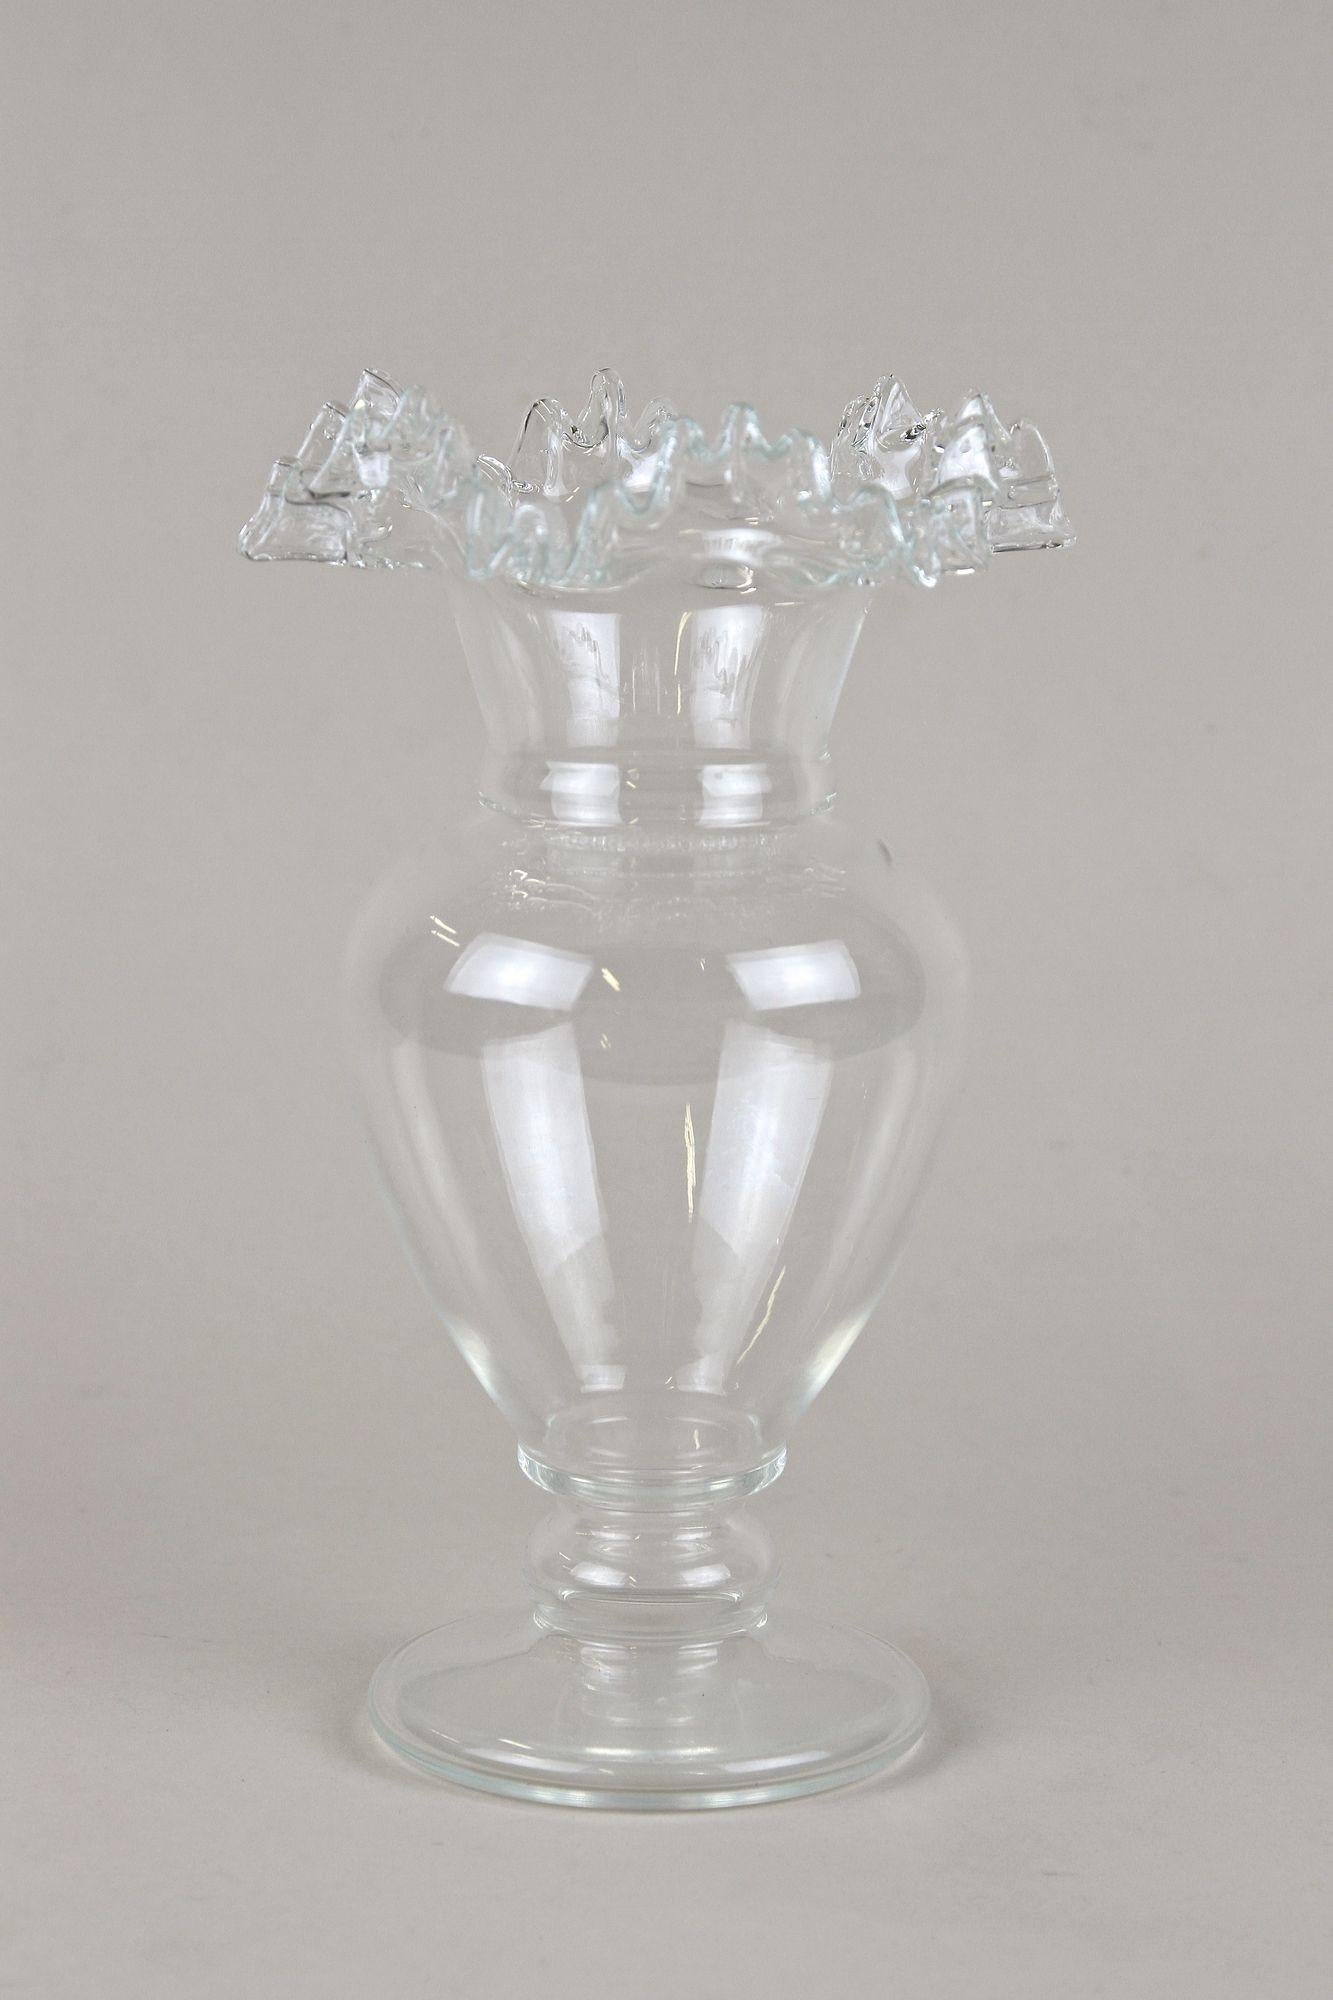 Extraordinaire vase en verre avec bord frisé provenant de la célèbre période Art Nouveau en Autriche vers 1900. Le corps en verre transparent soufflé à la bouche impressionne par son magnifique design bulbeux. Ce vase Art nouveau se distingue par